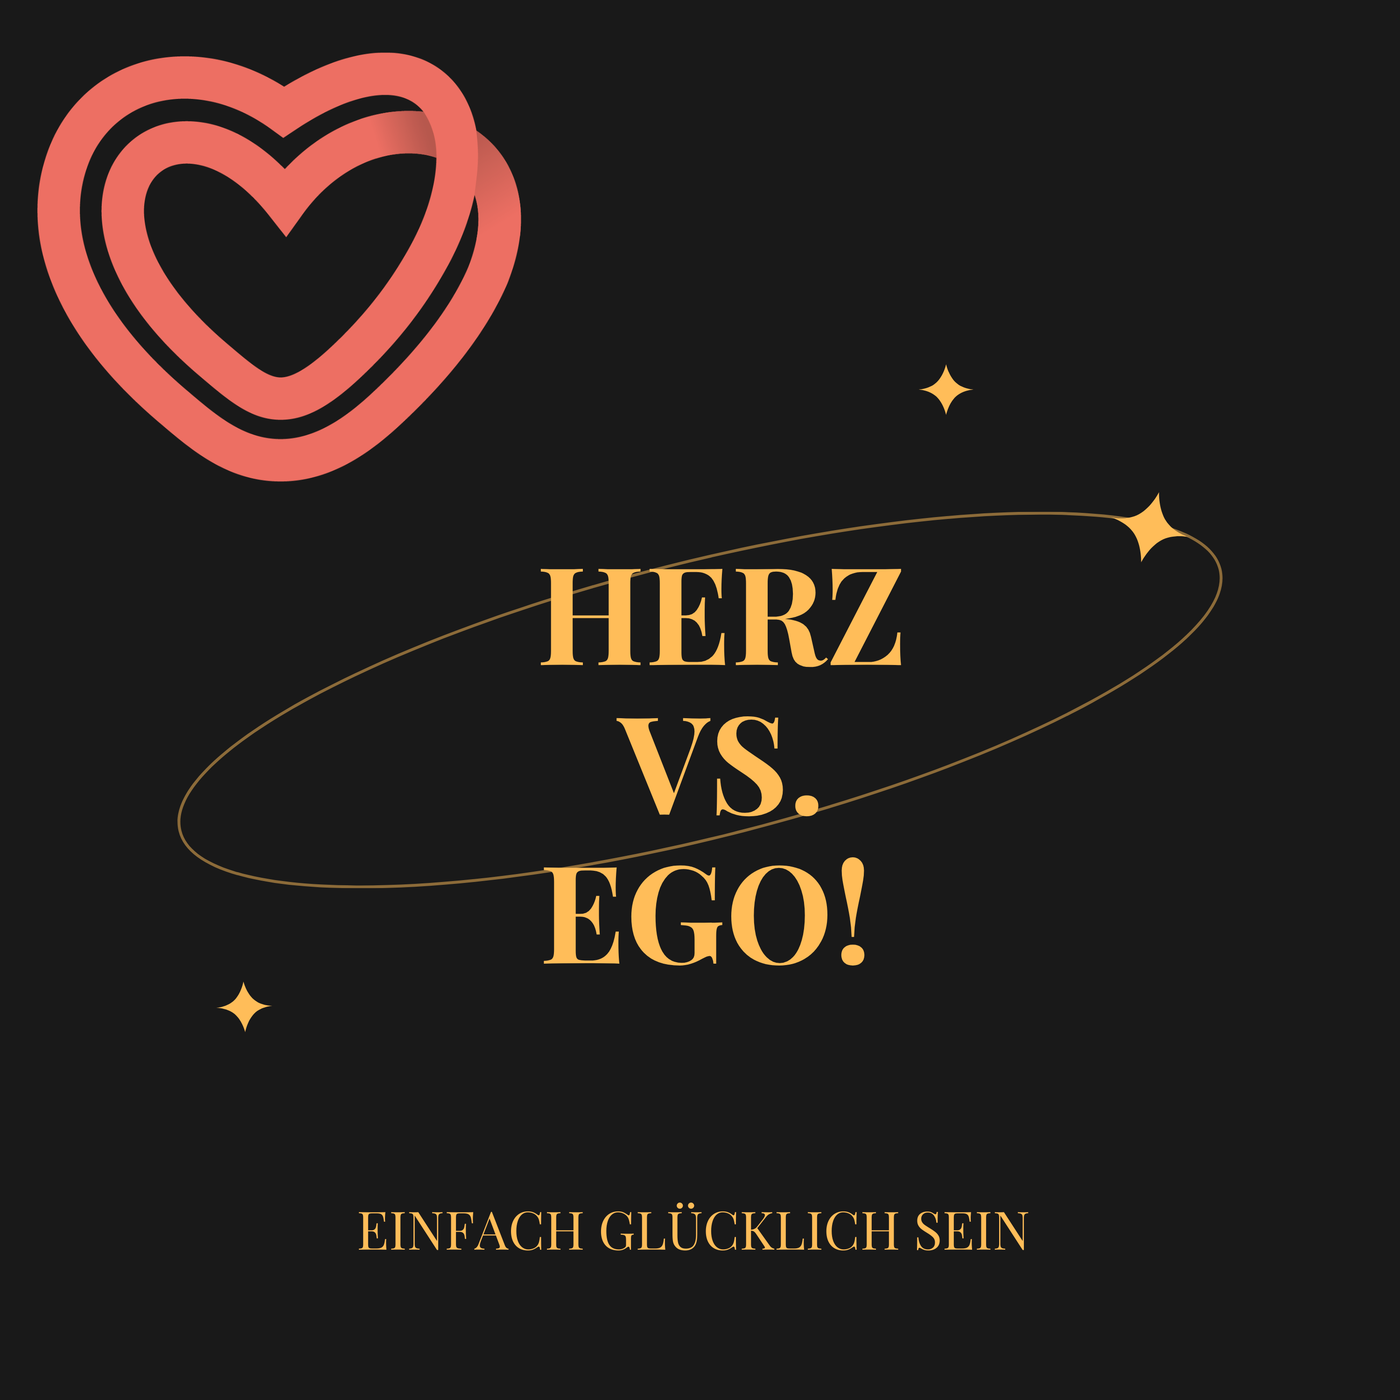 Herz vs. Ego